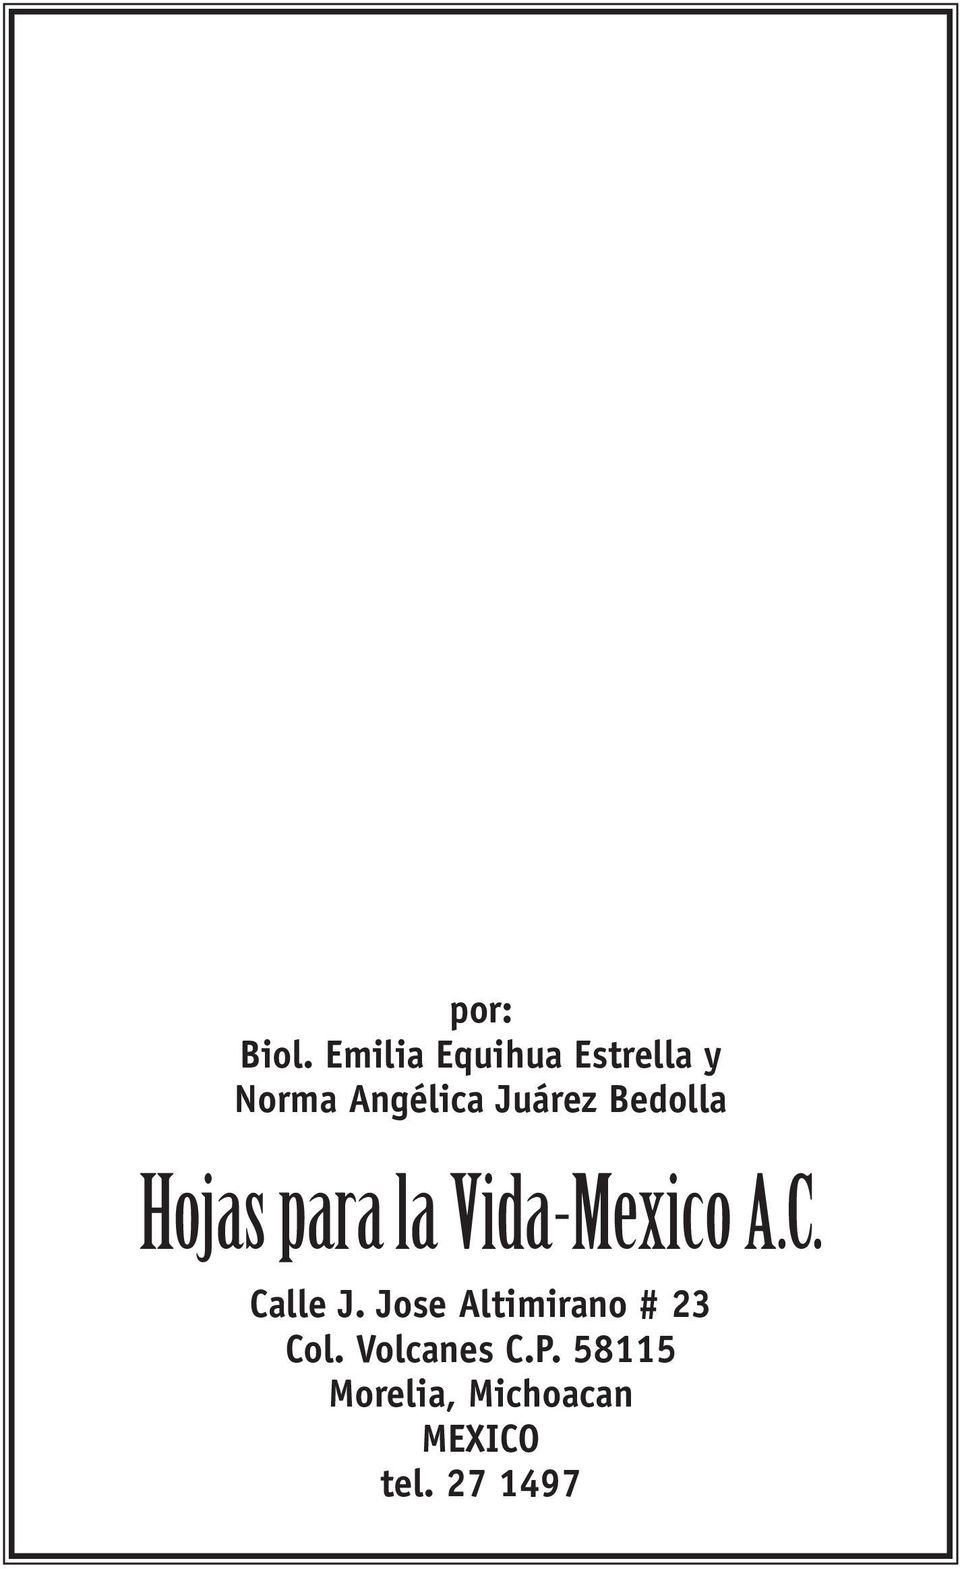 Bedolla Hojas para la Vida-Mexico A.C. Calle J.